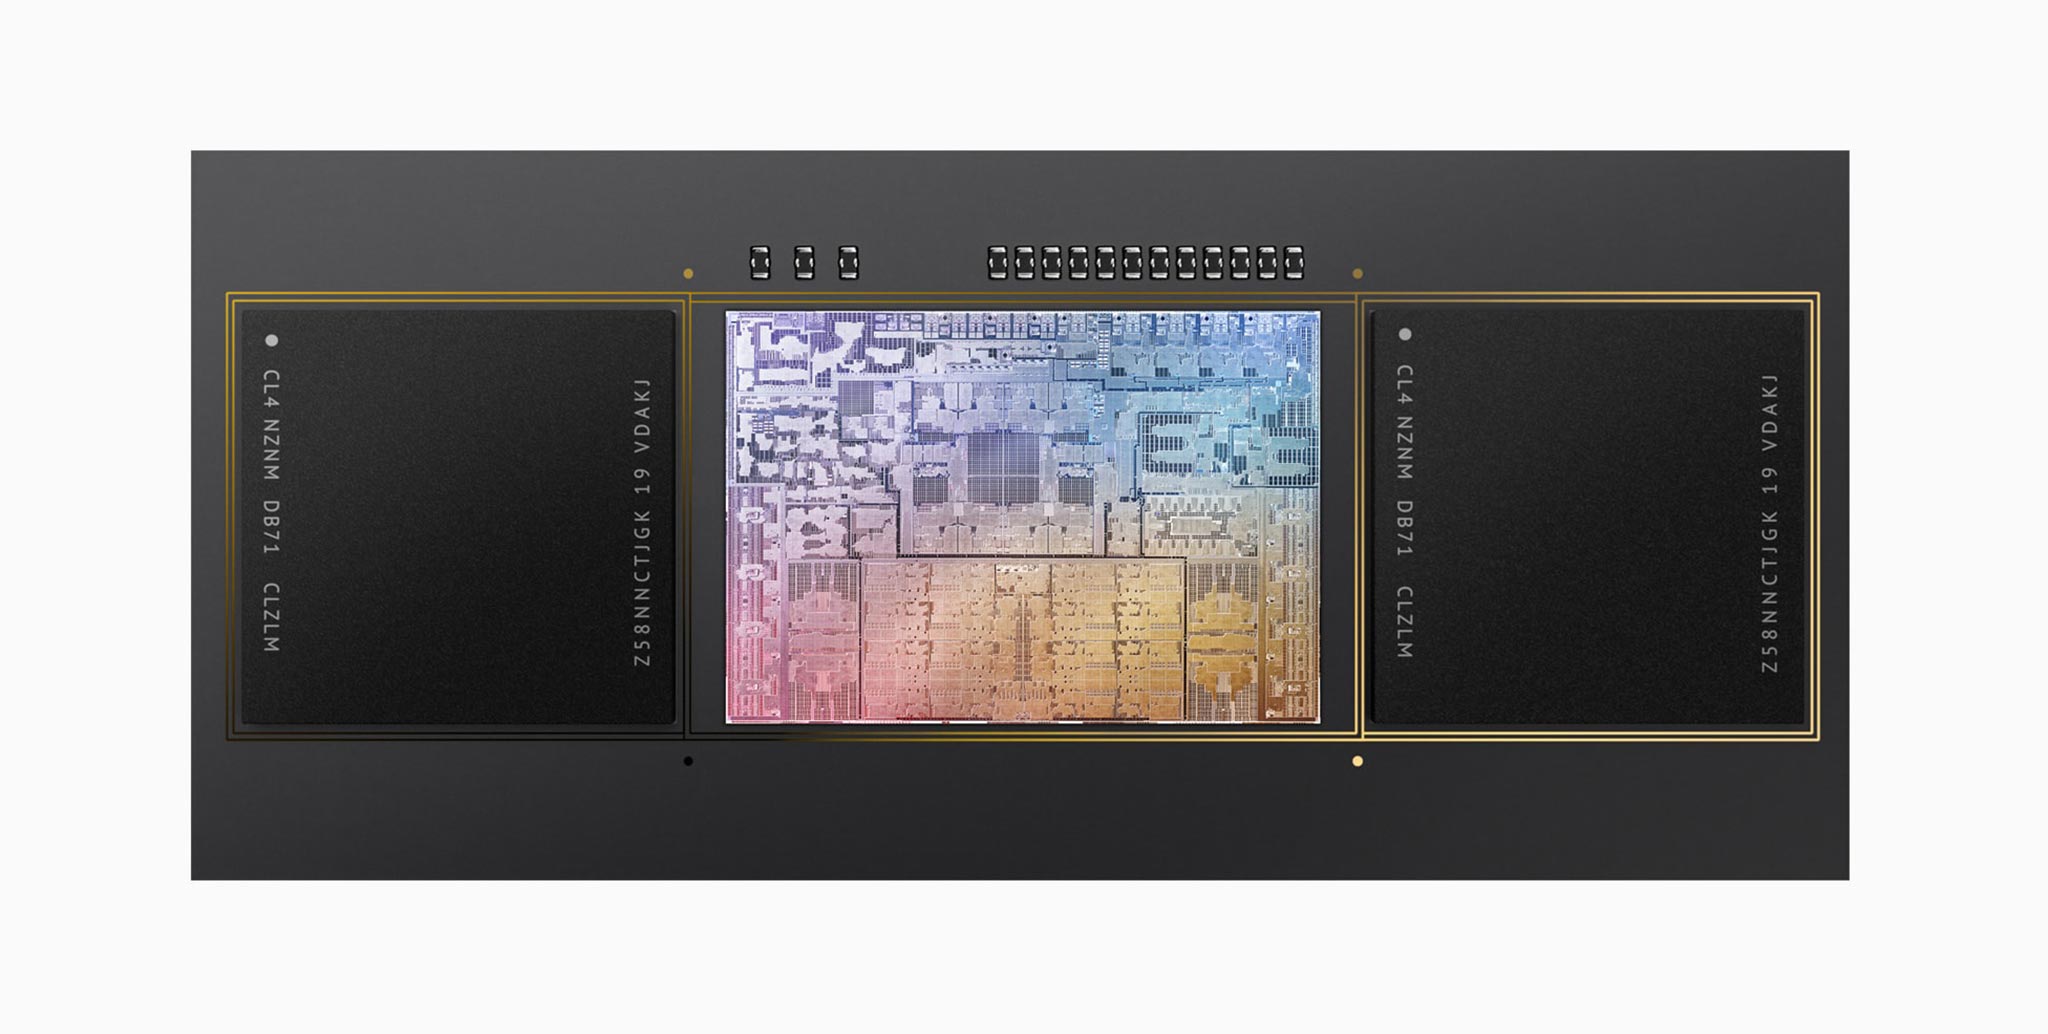 Đánh giá chi tiết Chip Apple M1 Pro: Hiệu năng vượt xa so tưởng tượng